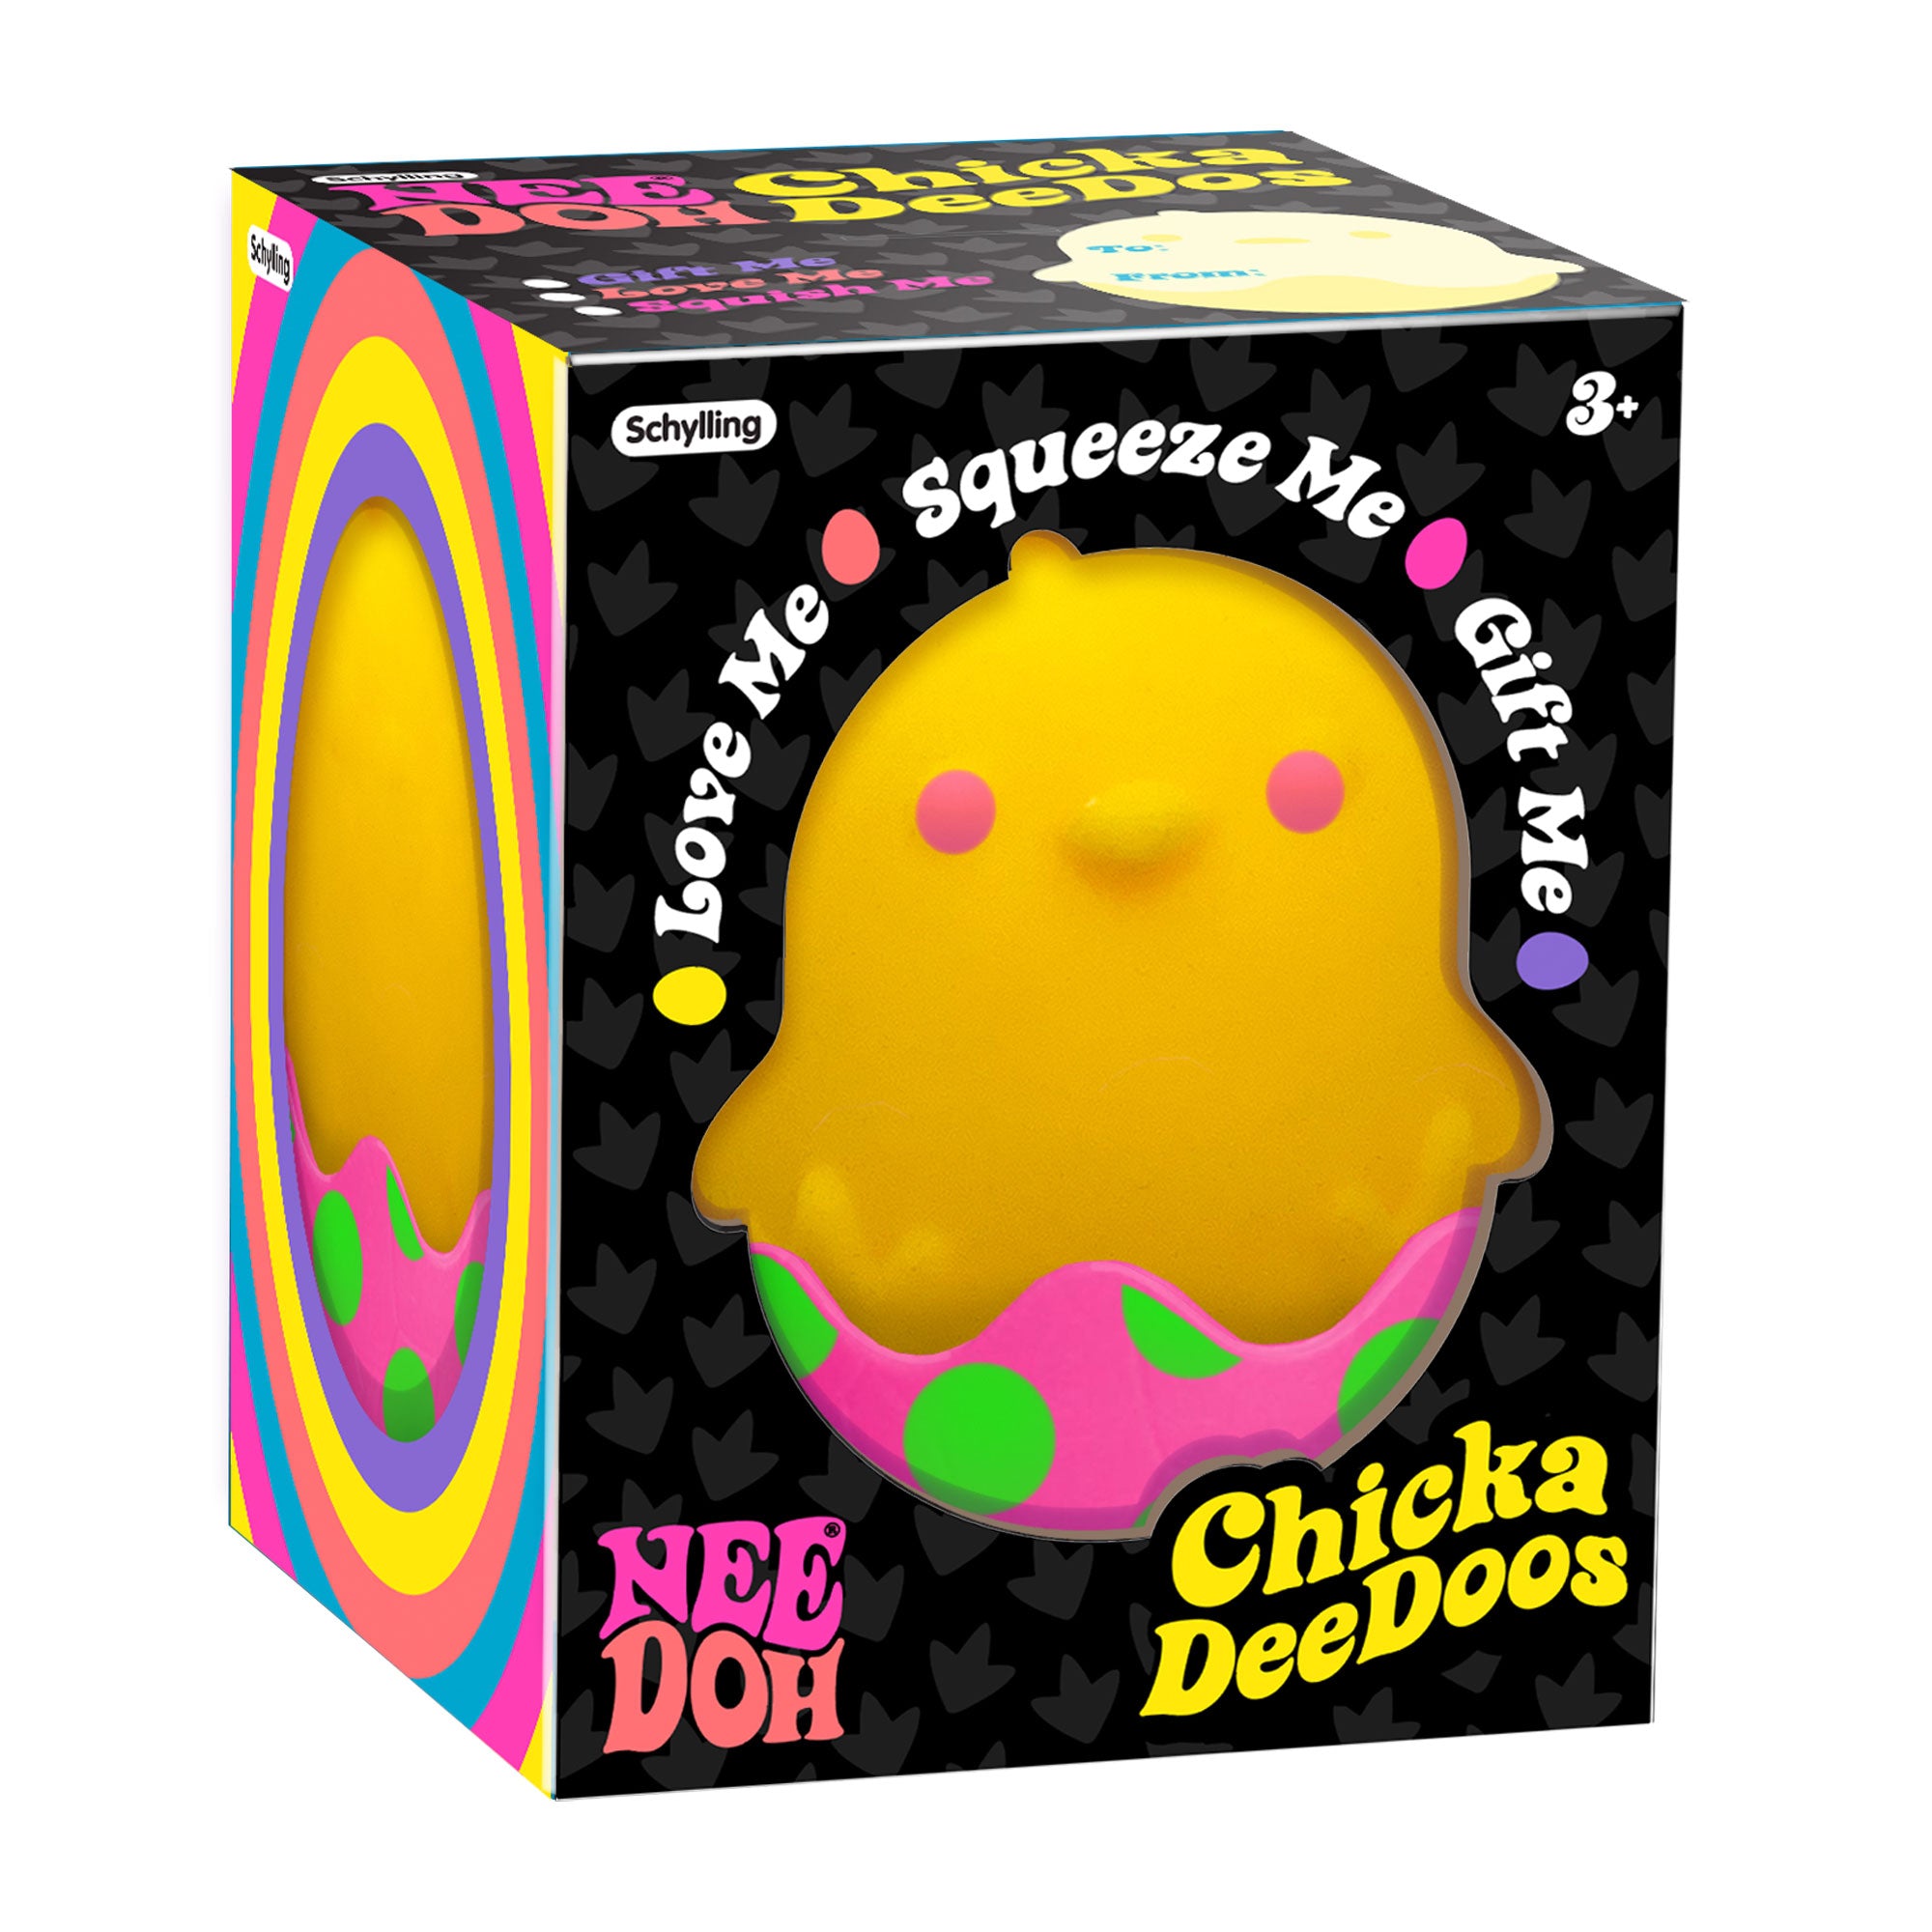 Nee Doh ChickaDeeDoos - Assorted